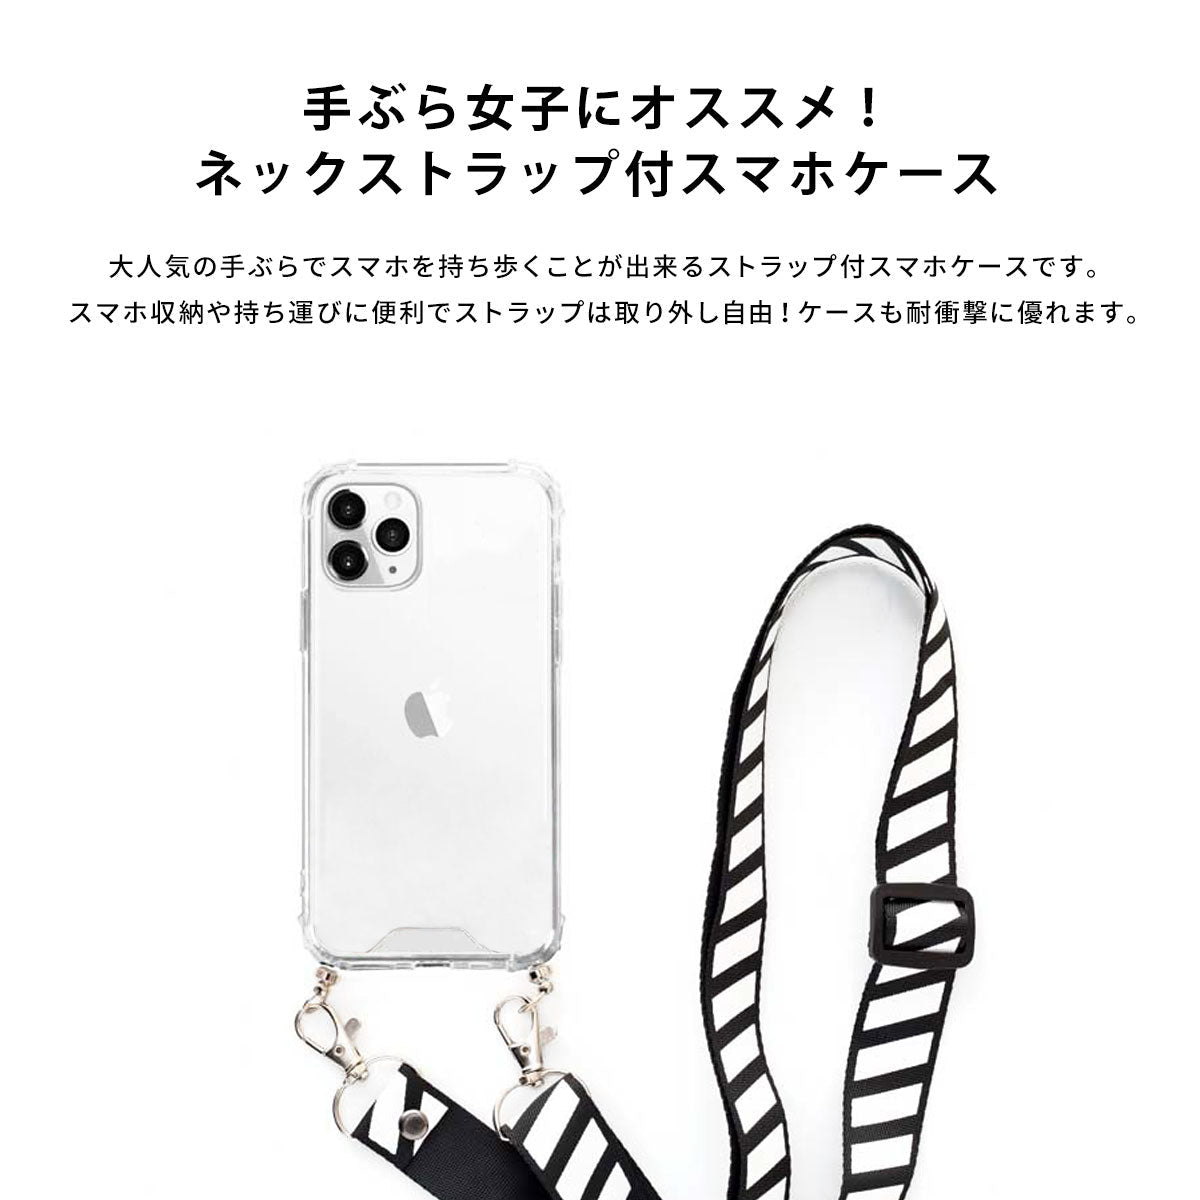 【手ぶら女子に】ネックストラップ スマホケース  iPhone13 iPone12 かわいい おしゃれ  ネックストラップ付き ラッコ 名入れ